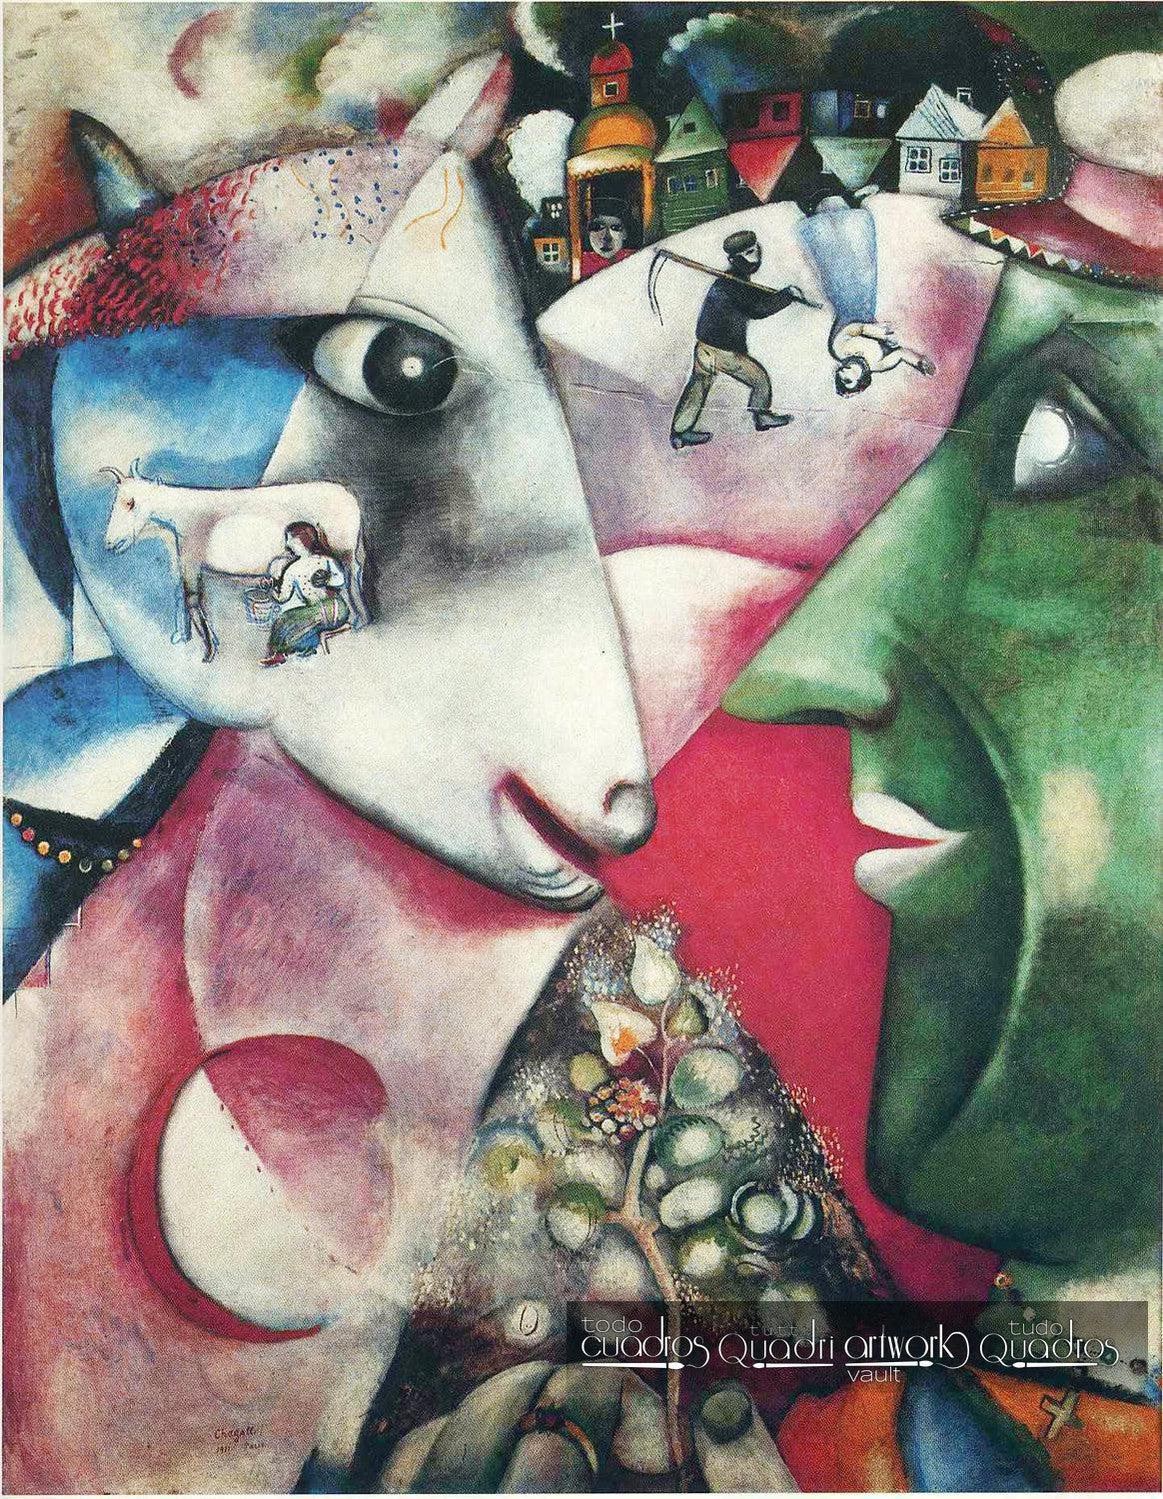 Eu e a aldeia, Chagall